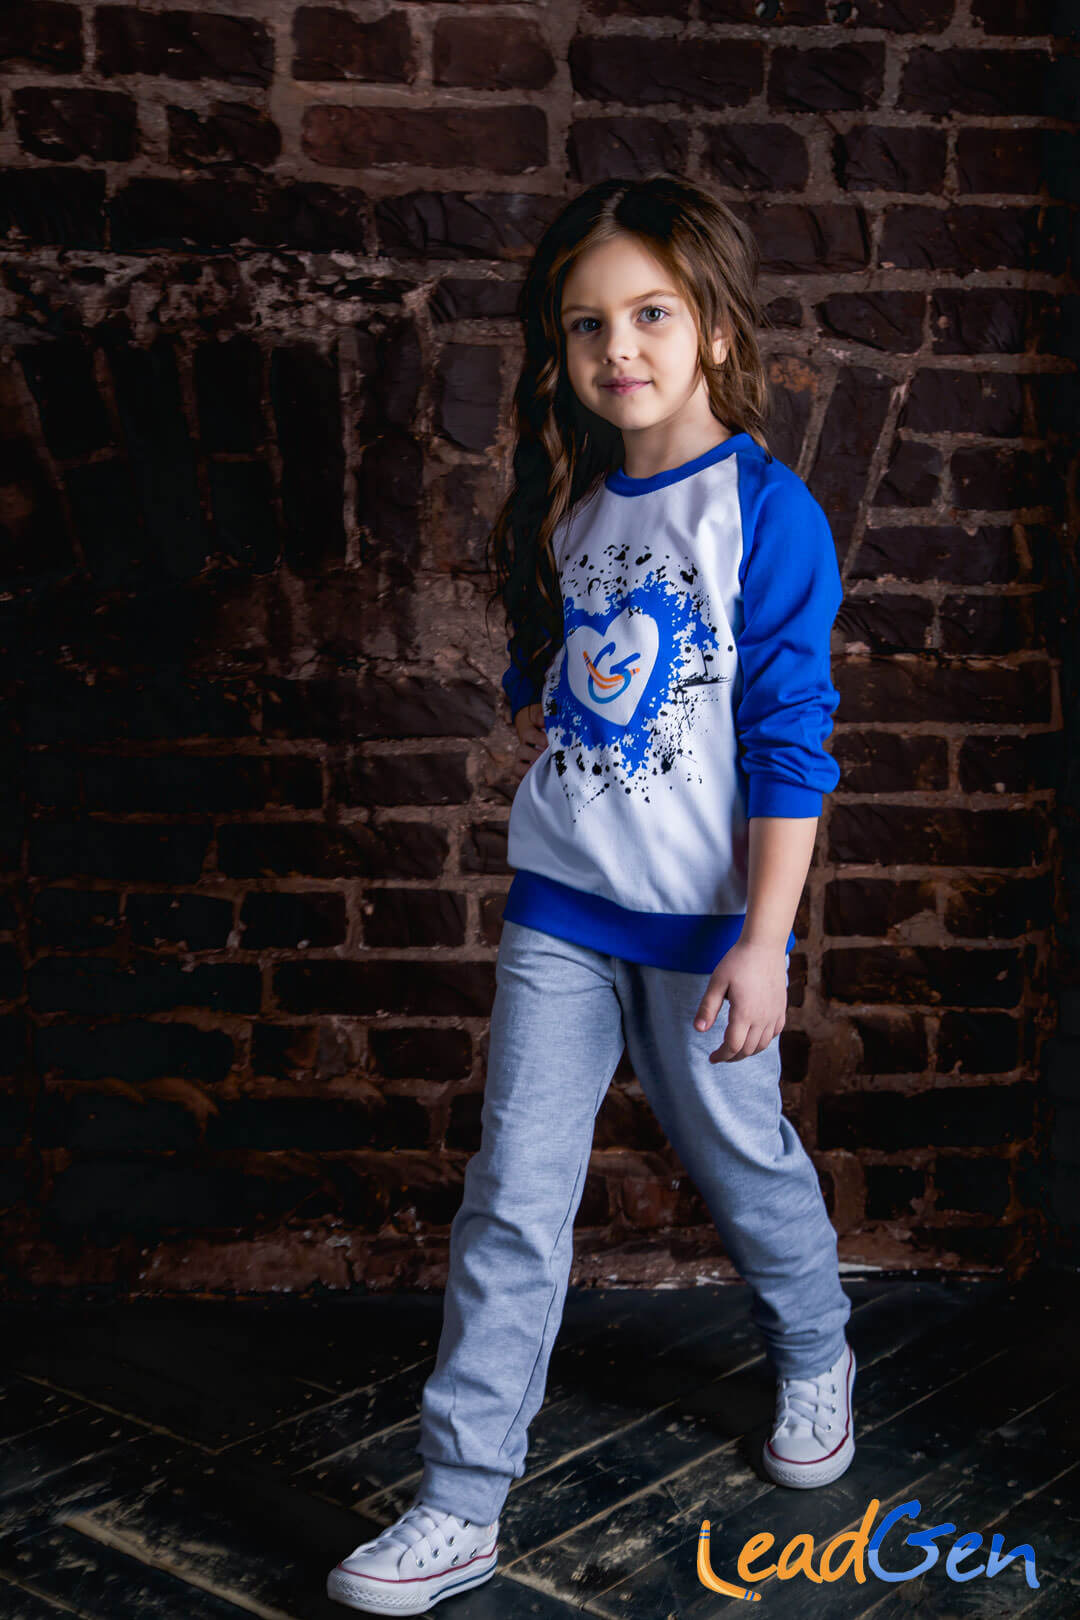 Child max. Брюки для девочек 12 лет. Борткова одежда бренд. Детская модель Майя.